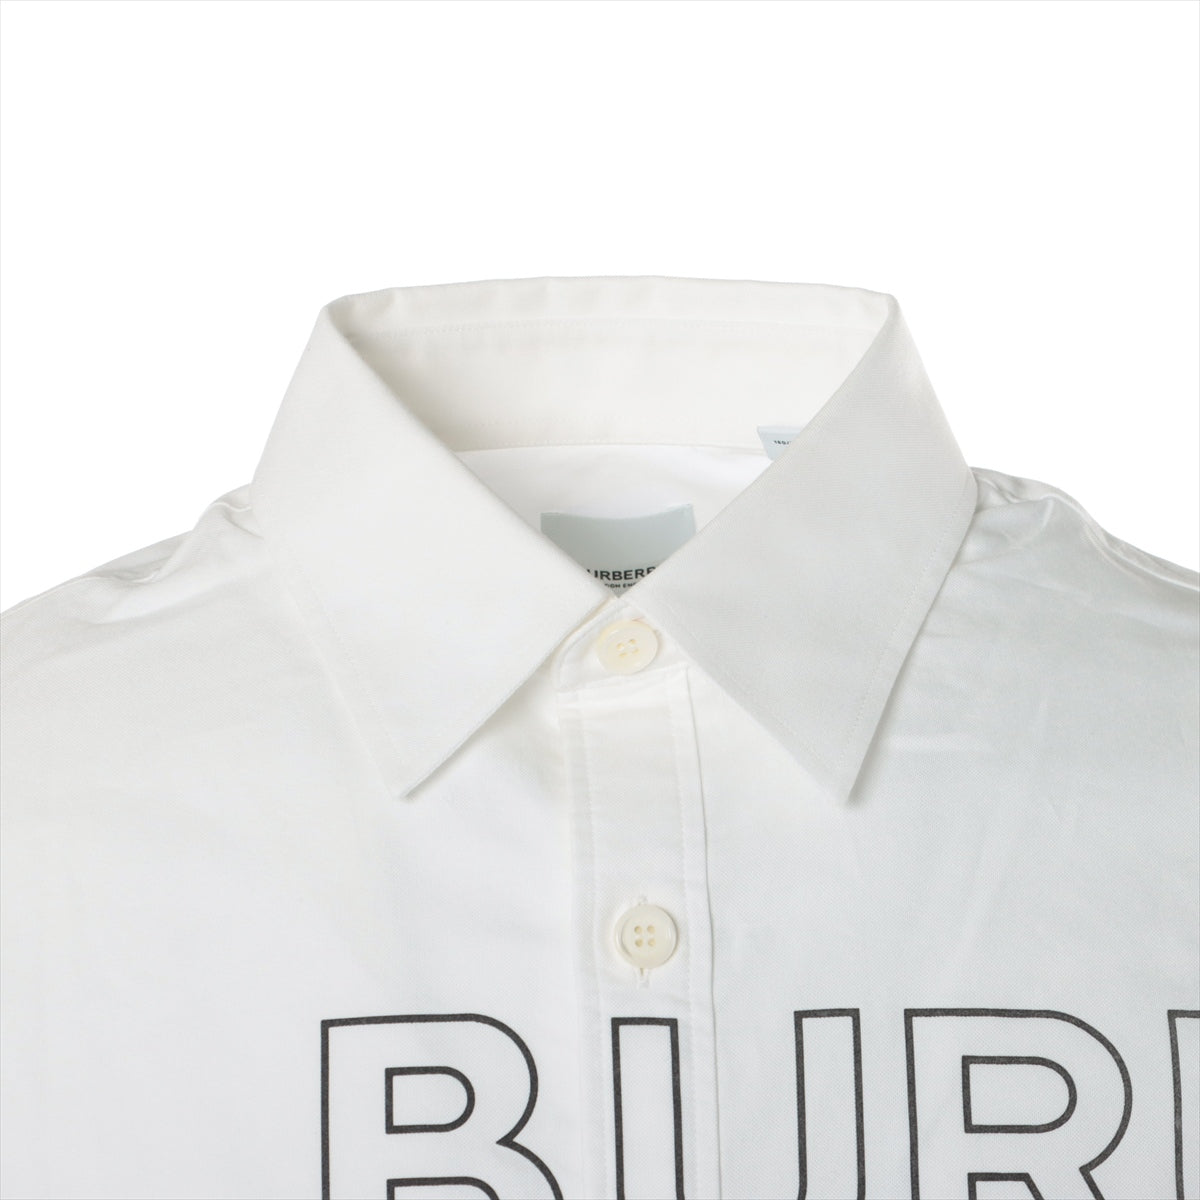 Burberry Horse ferry Tissi period Cotton Shirt XS Men's White  8036768